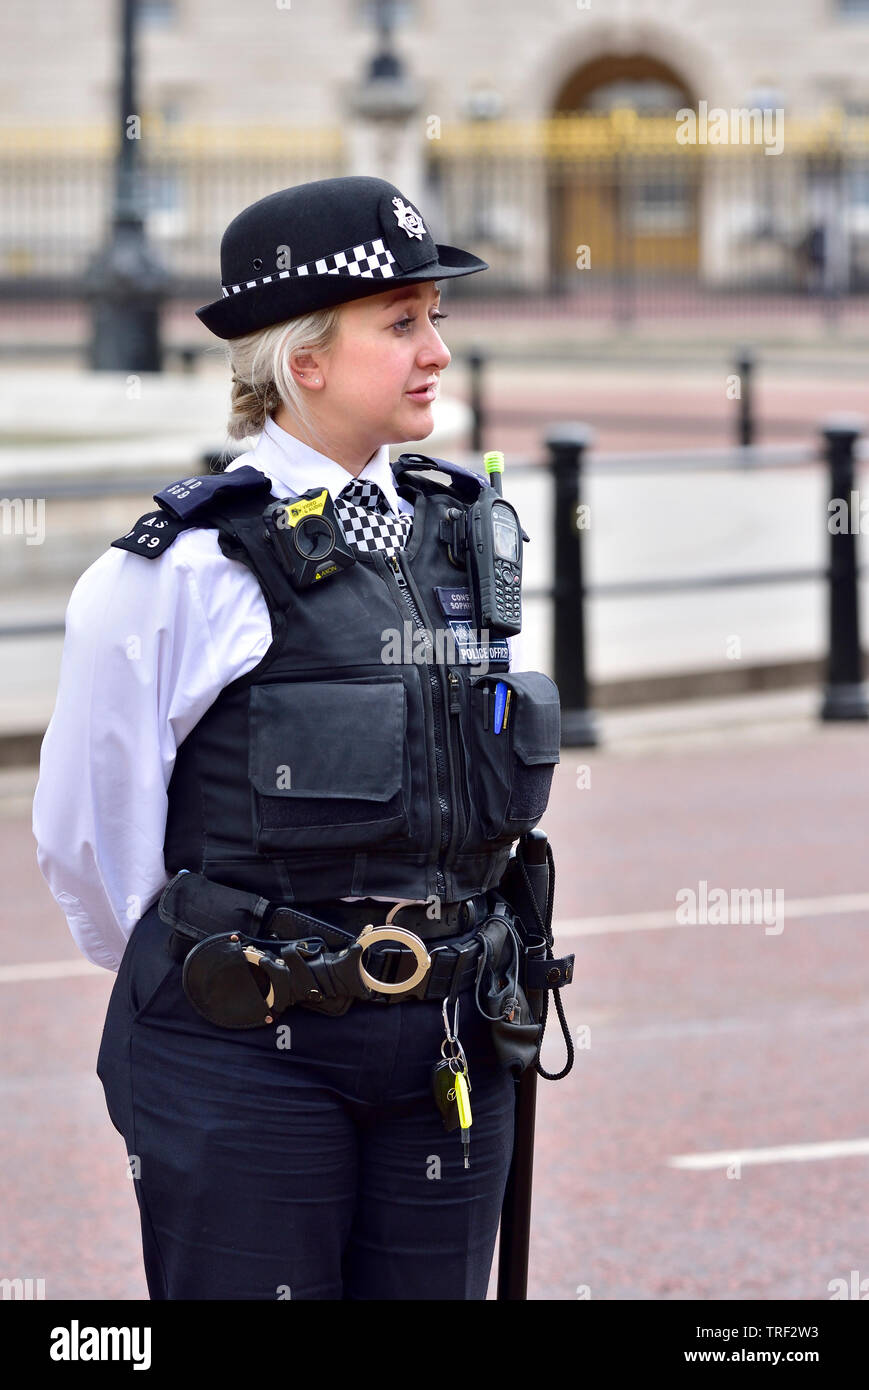 Londres, Inglaterra, Reino Unido. Oficial de guardia de la Policía Metropolitana alrededor del Mall durante la visita de estado del magnate Donald Trump, 3 de junio de 2019 Foto de stock